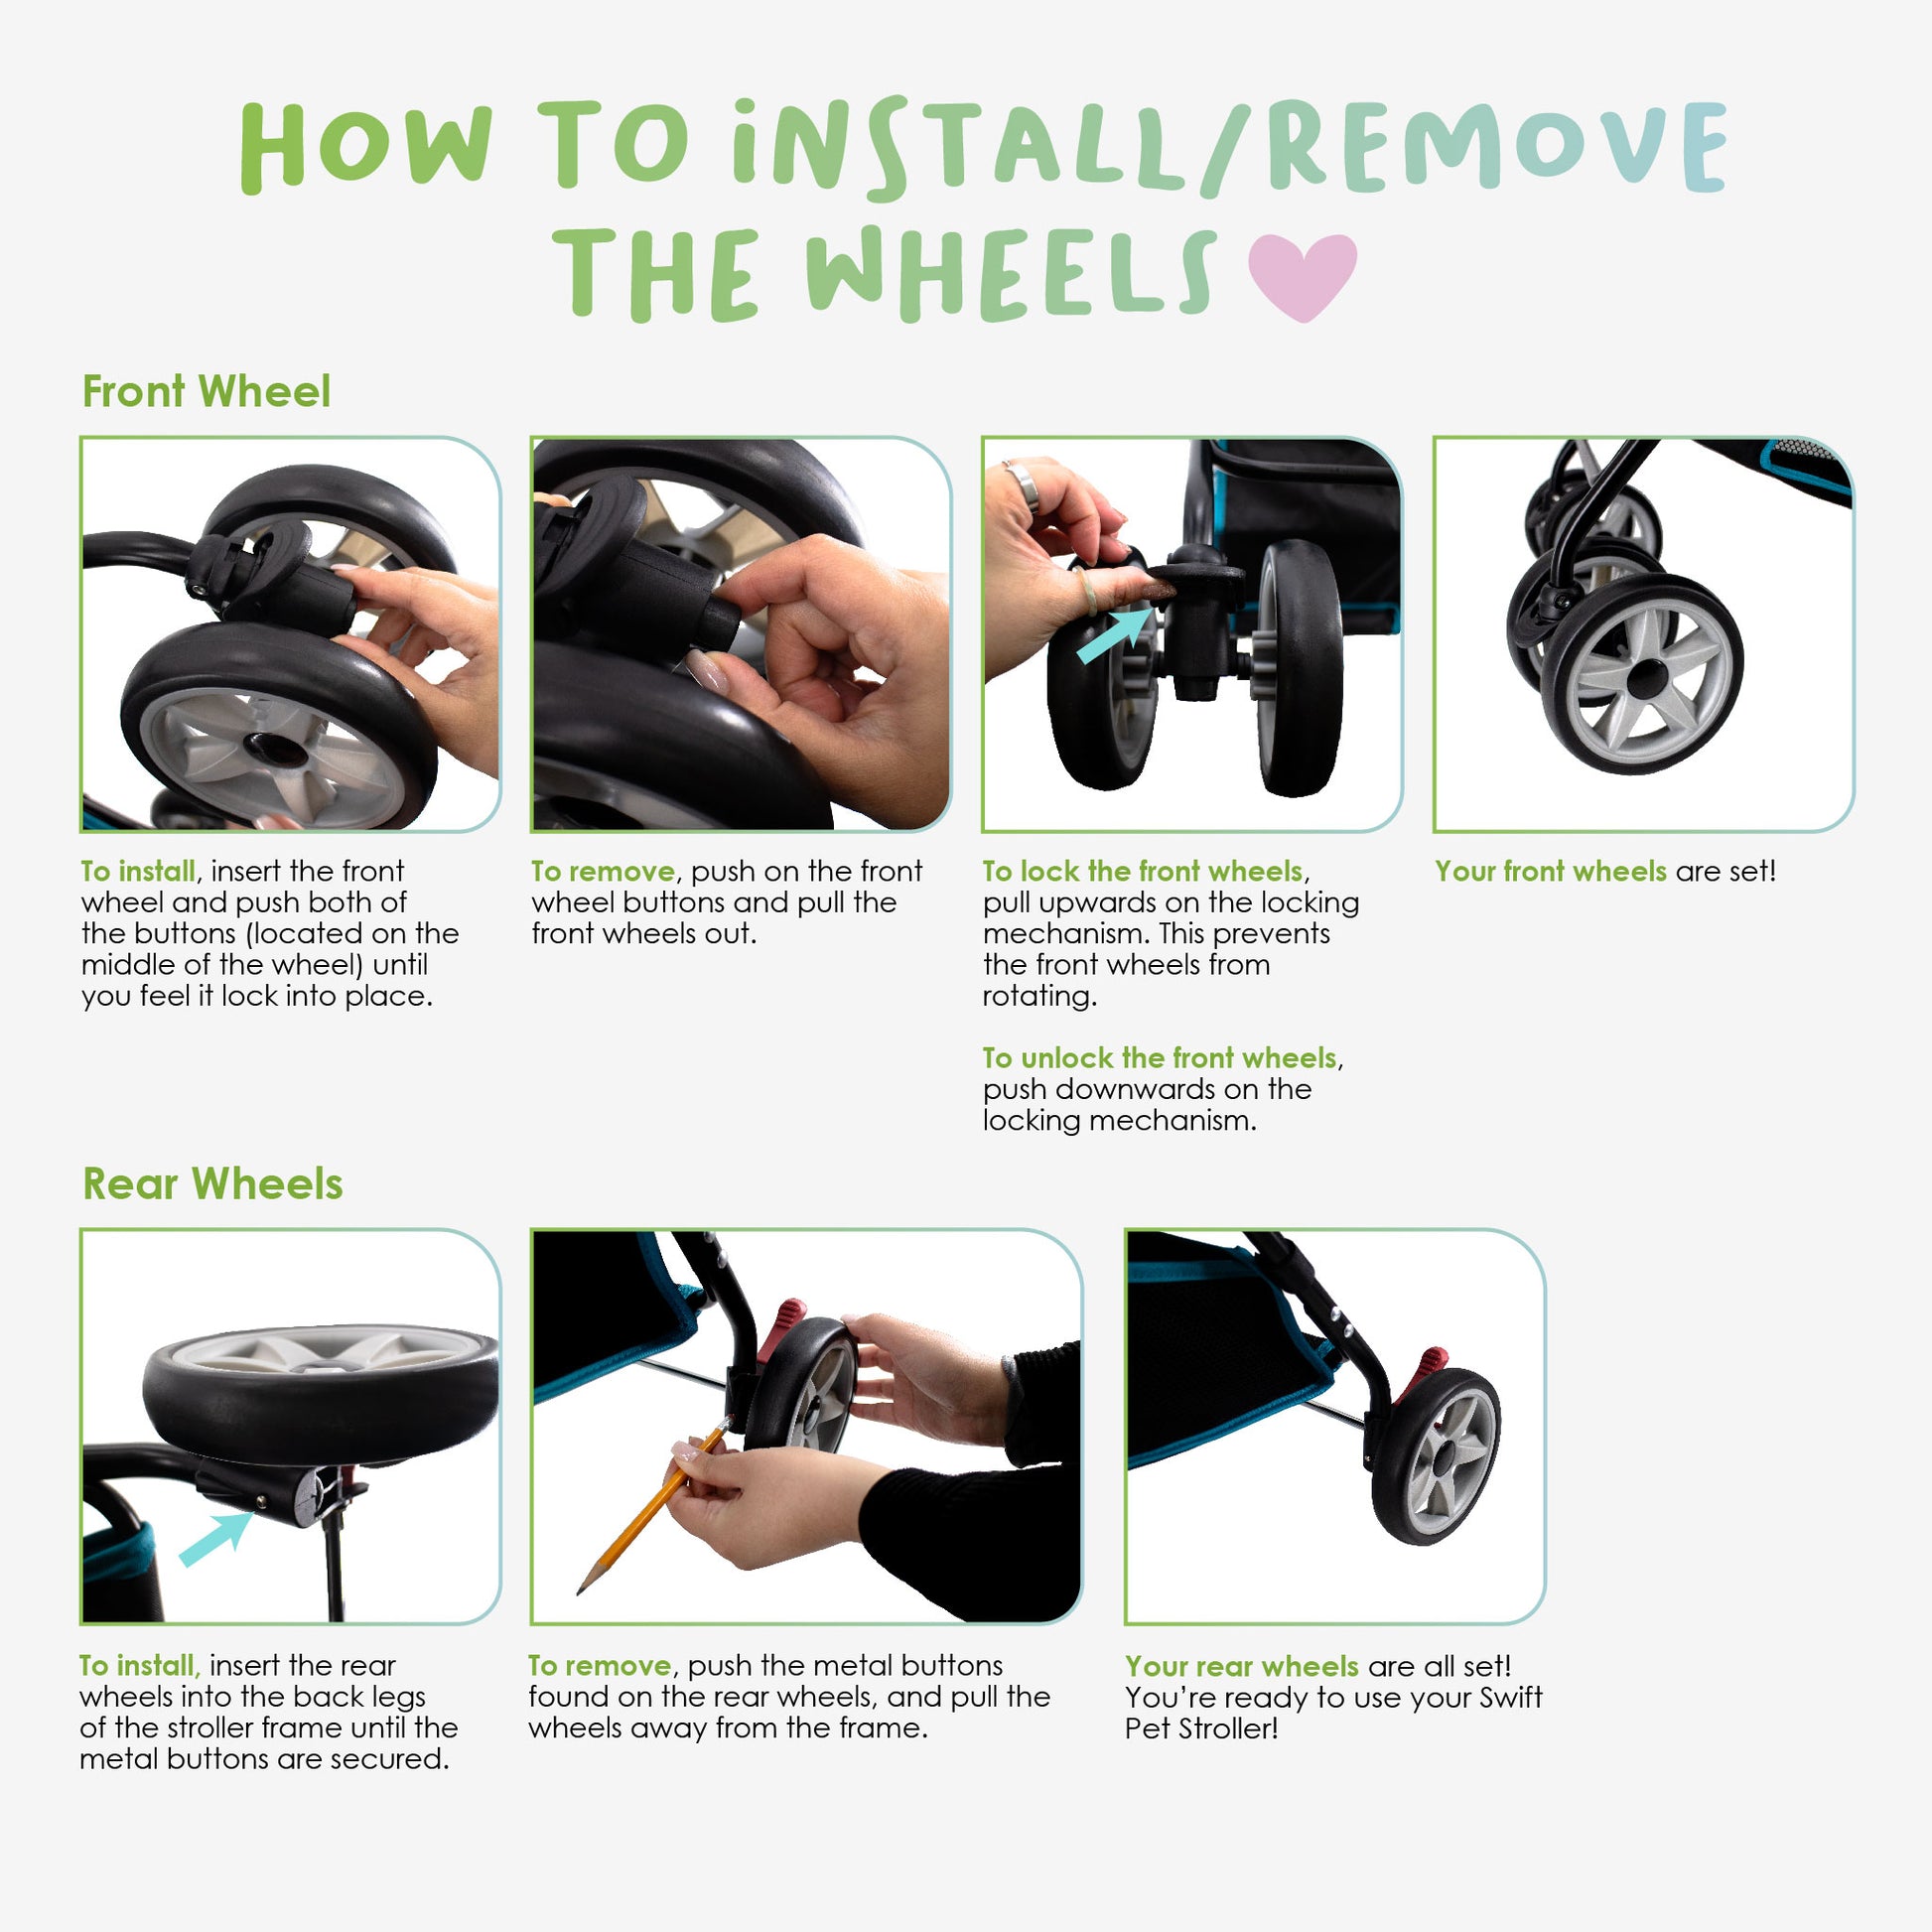 swift pet stroller wheel instructions